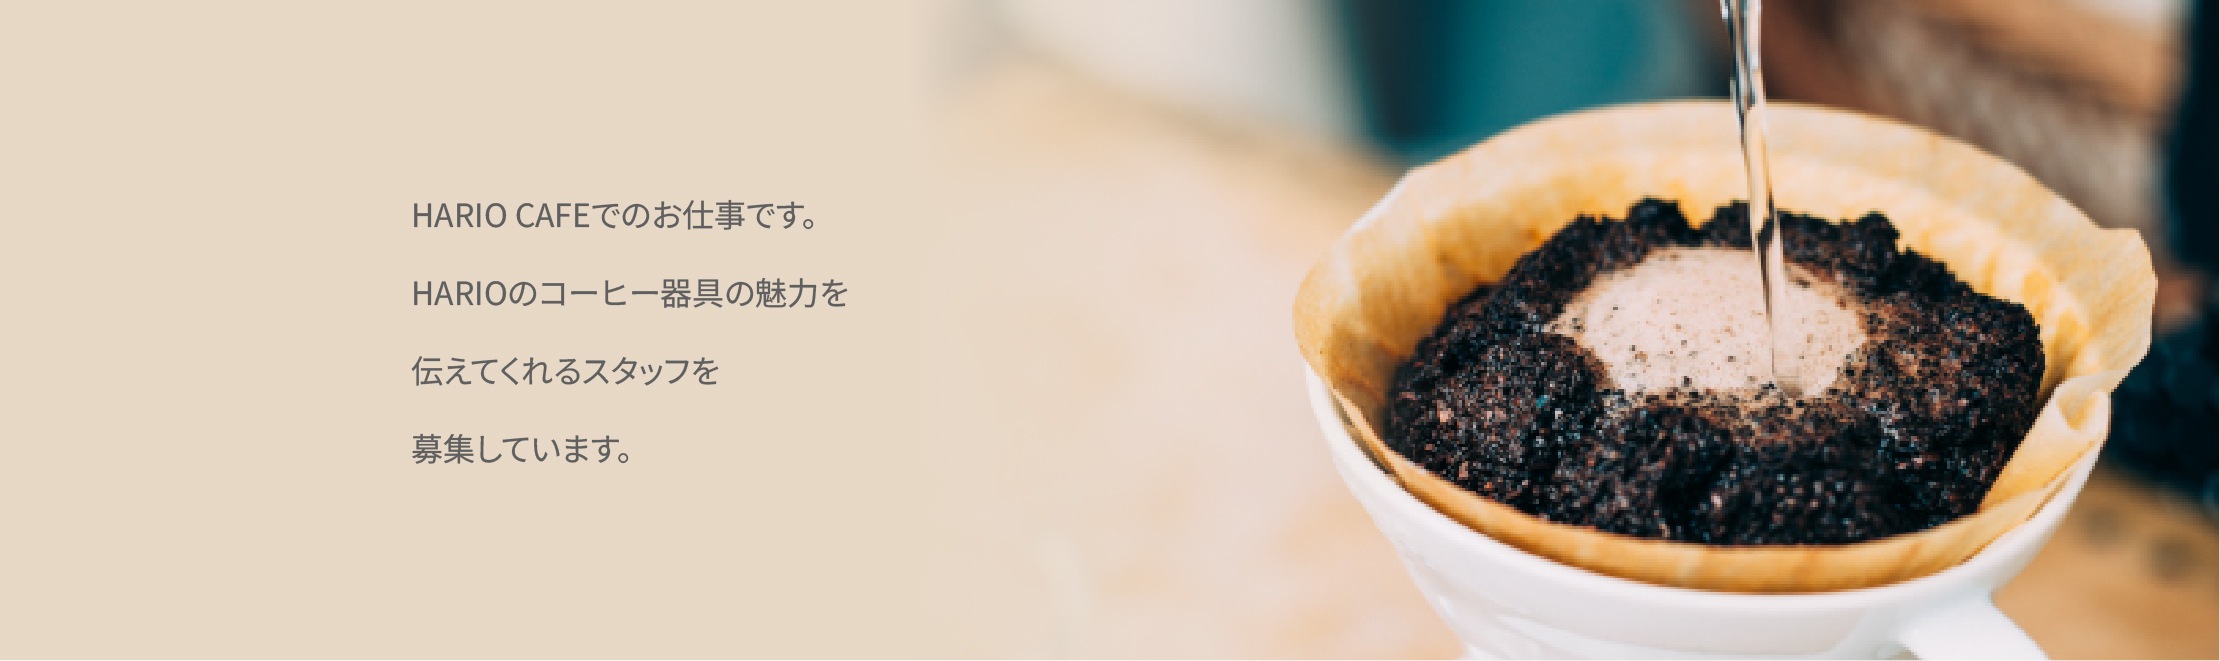 HARIO CAFEでのお仕事です。HARIOのコーヒー器具の魅力を伝えてくれるスタッフを募集しています。